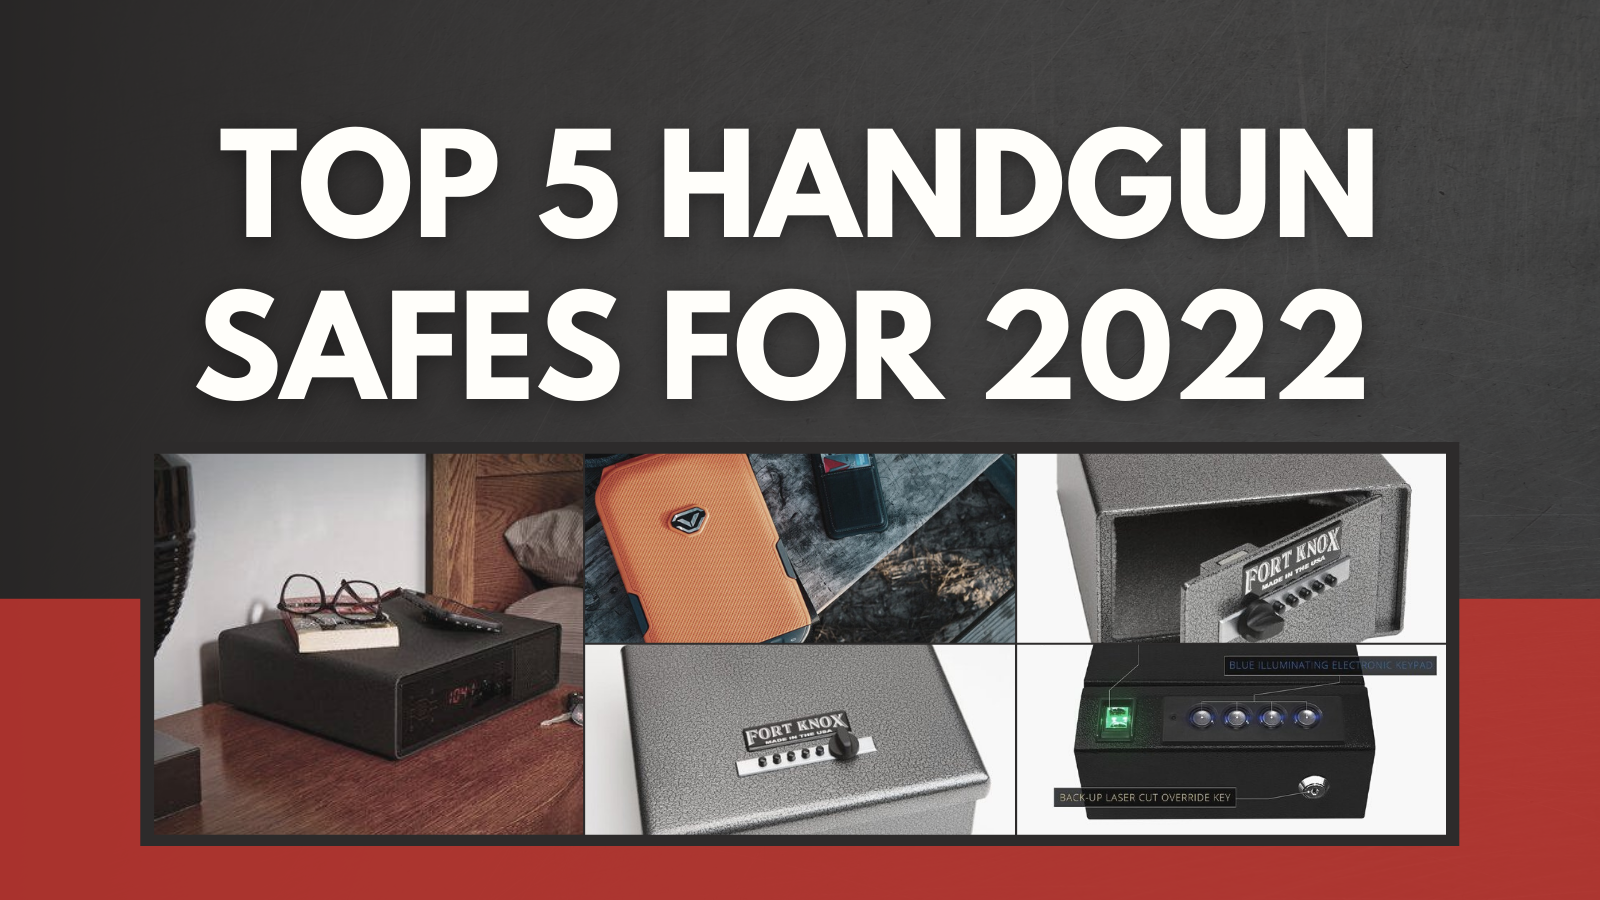 Top 5 Handgun Safes for 2022